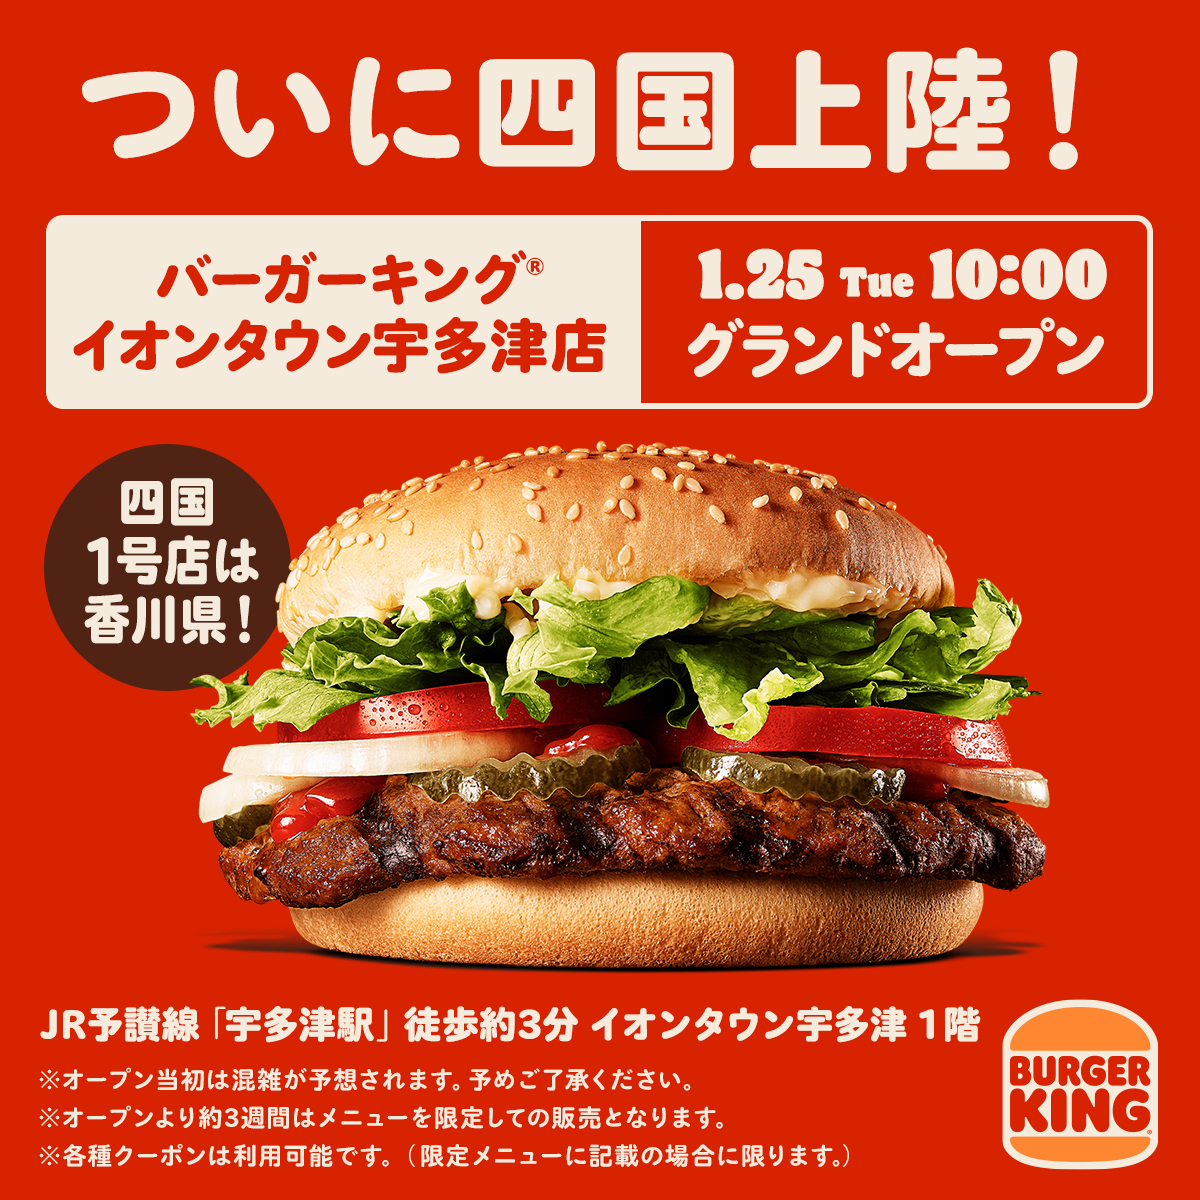 バーガーキング ジャパン Burgerkingjapan Twitter